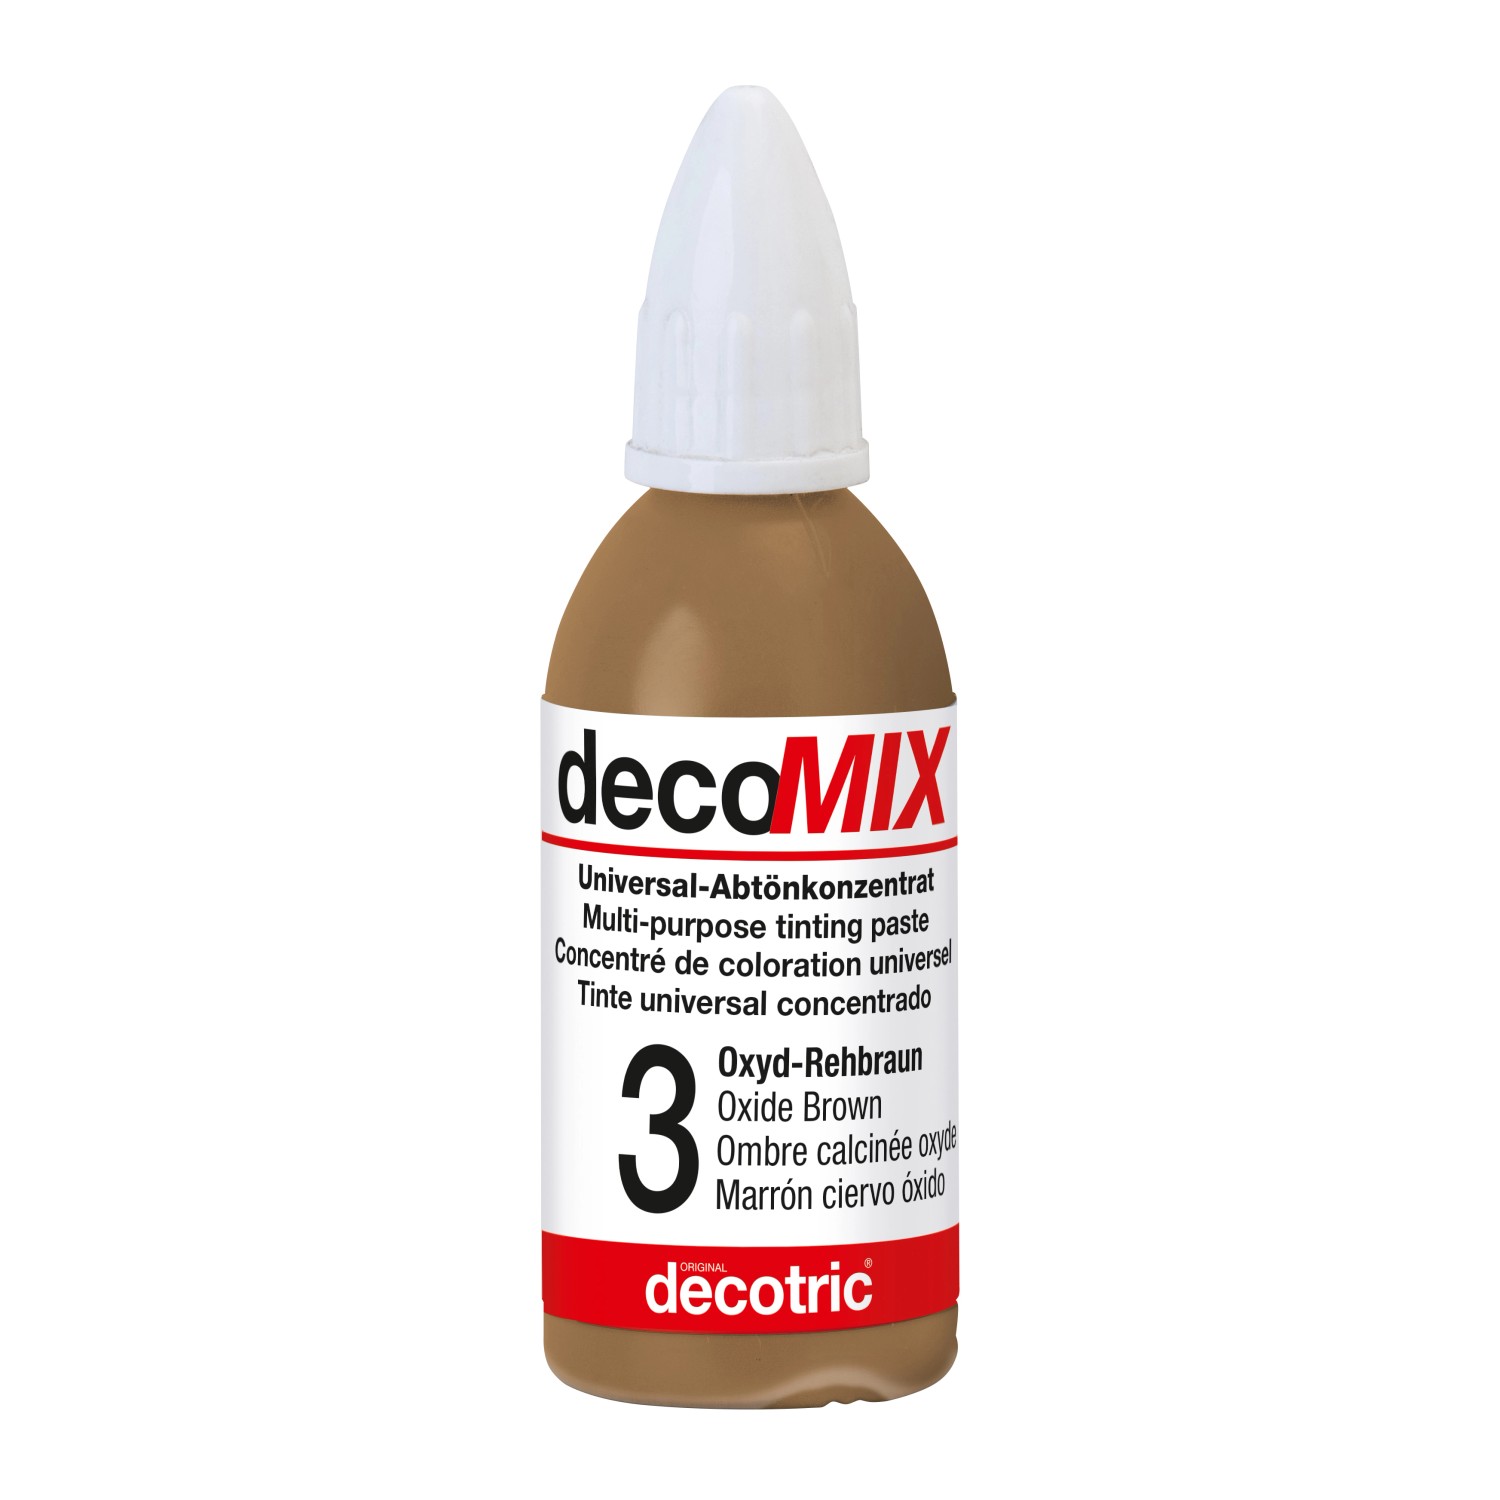 Decomix Universal-Abtönkonzentrat Oxyd-Rehbraun 20 ml von decotric